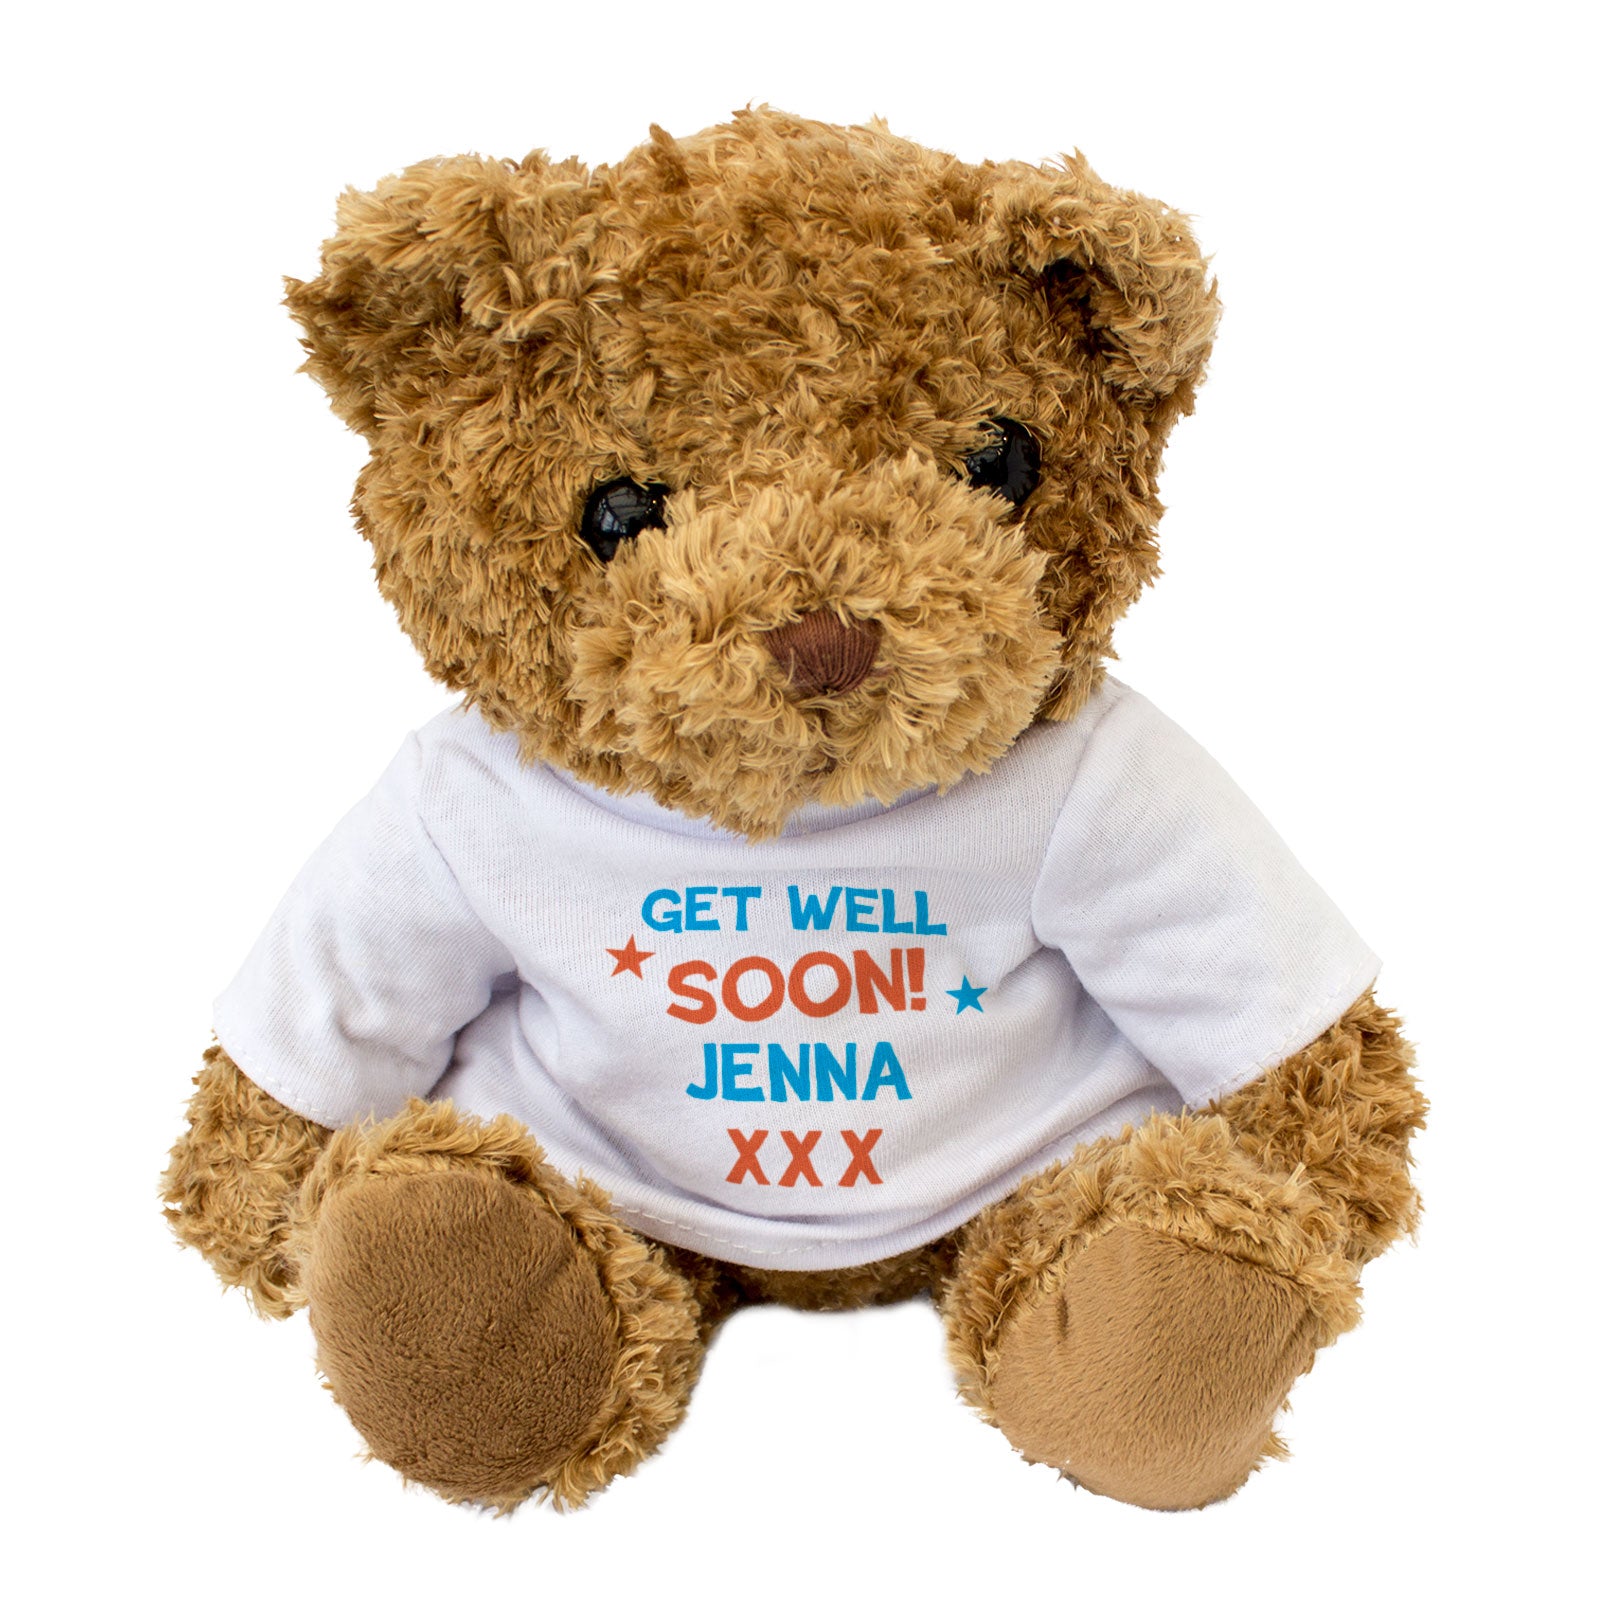 Get Well Soon Jenna - Teddy Bear